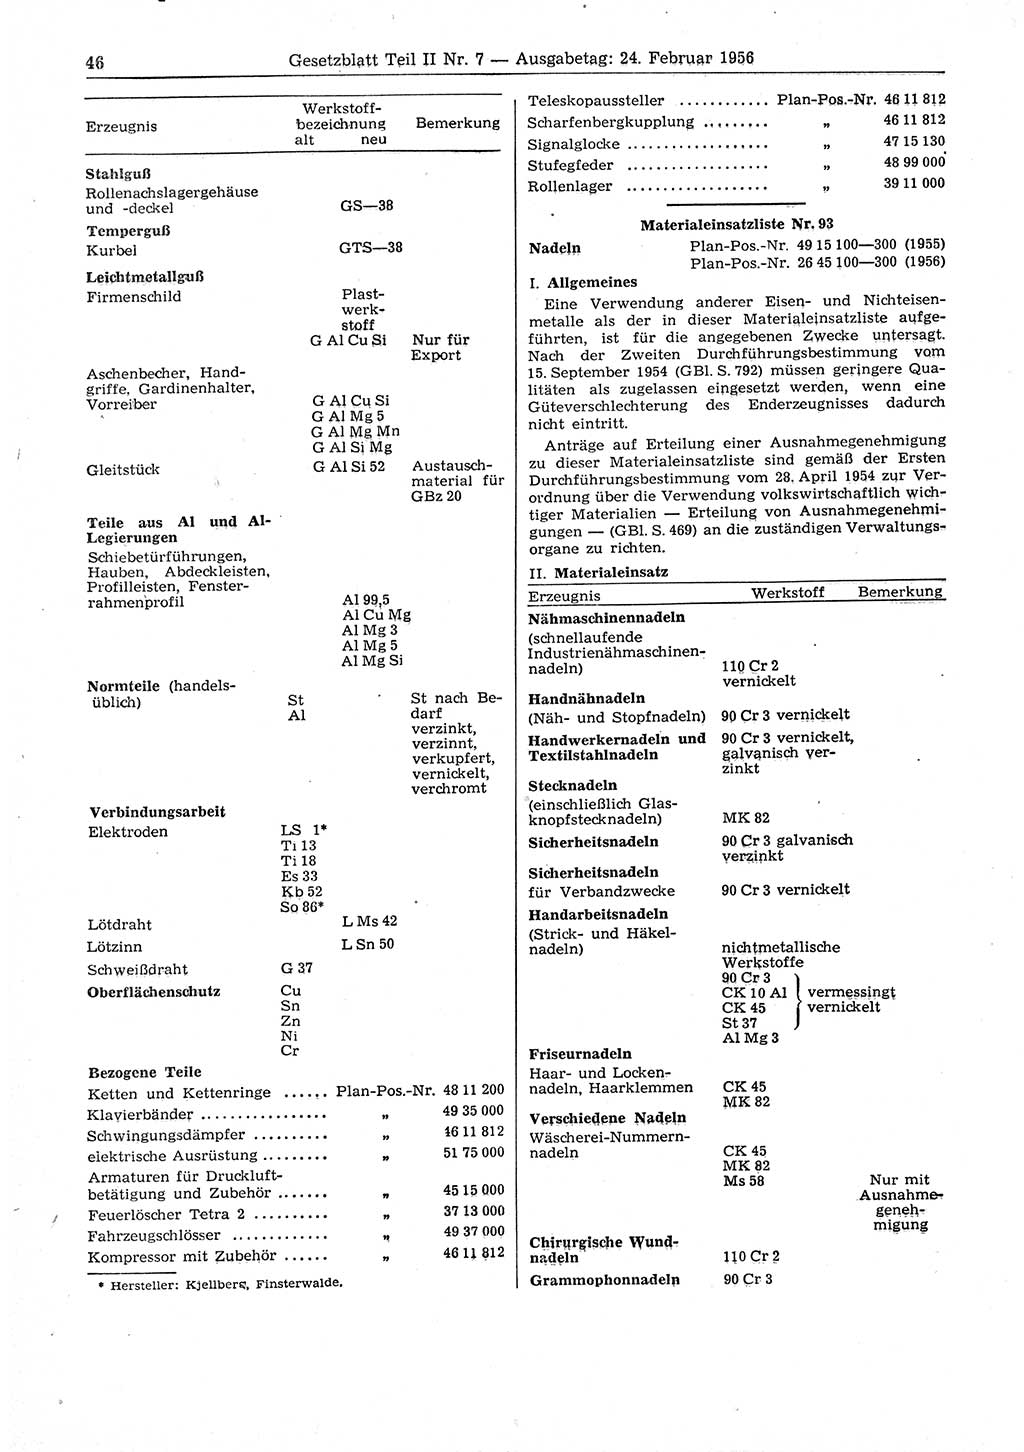 Gesetzblatt (GBl.) der Deutschen Demokratischen Republik (DDR) Teil ⅠⅠ 1956, Seite 46 (GBl. DDR ⅠⅠ 1956, S. 46)